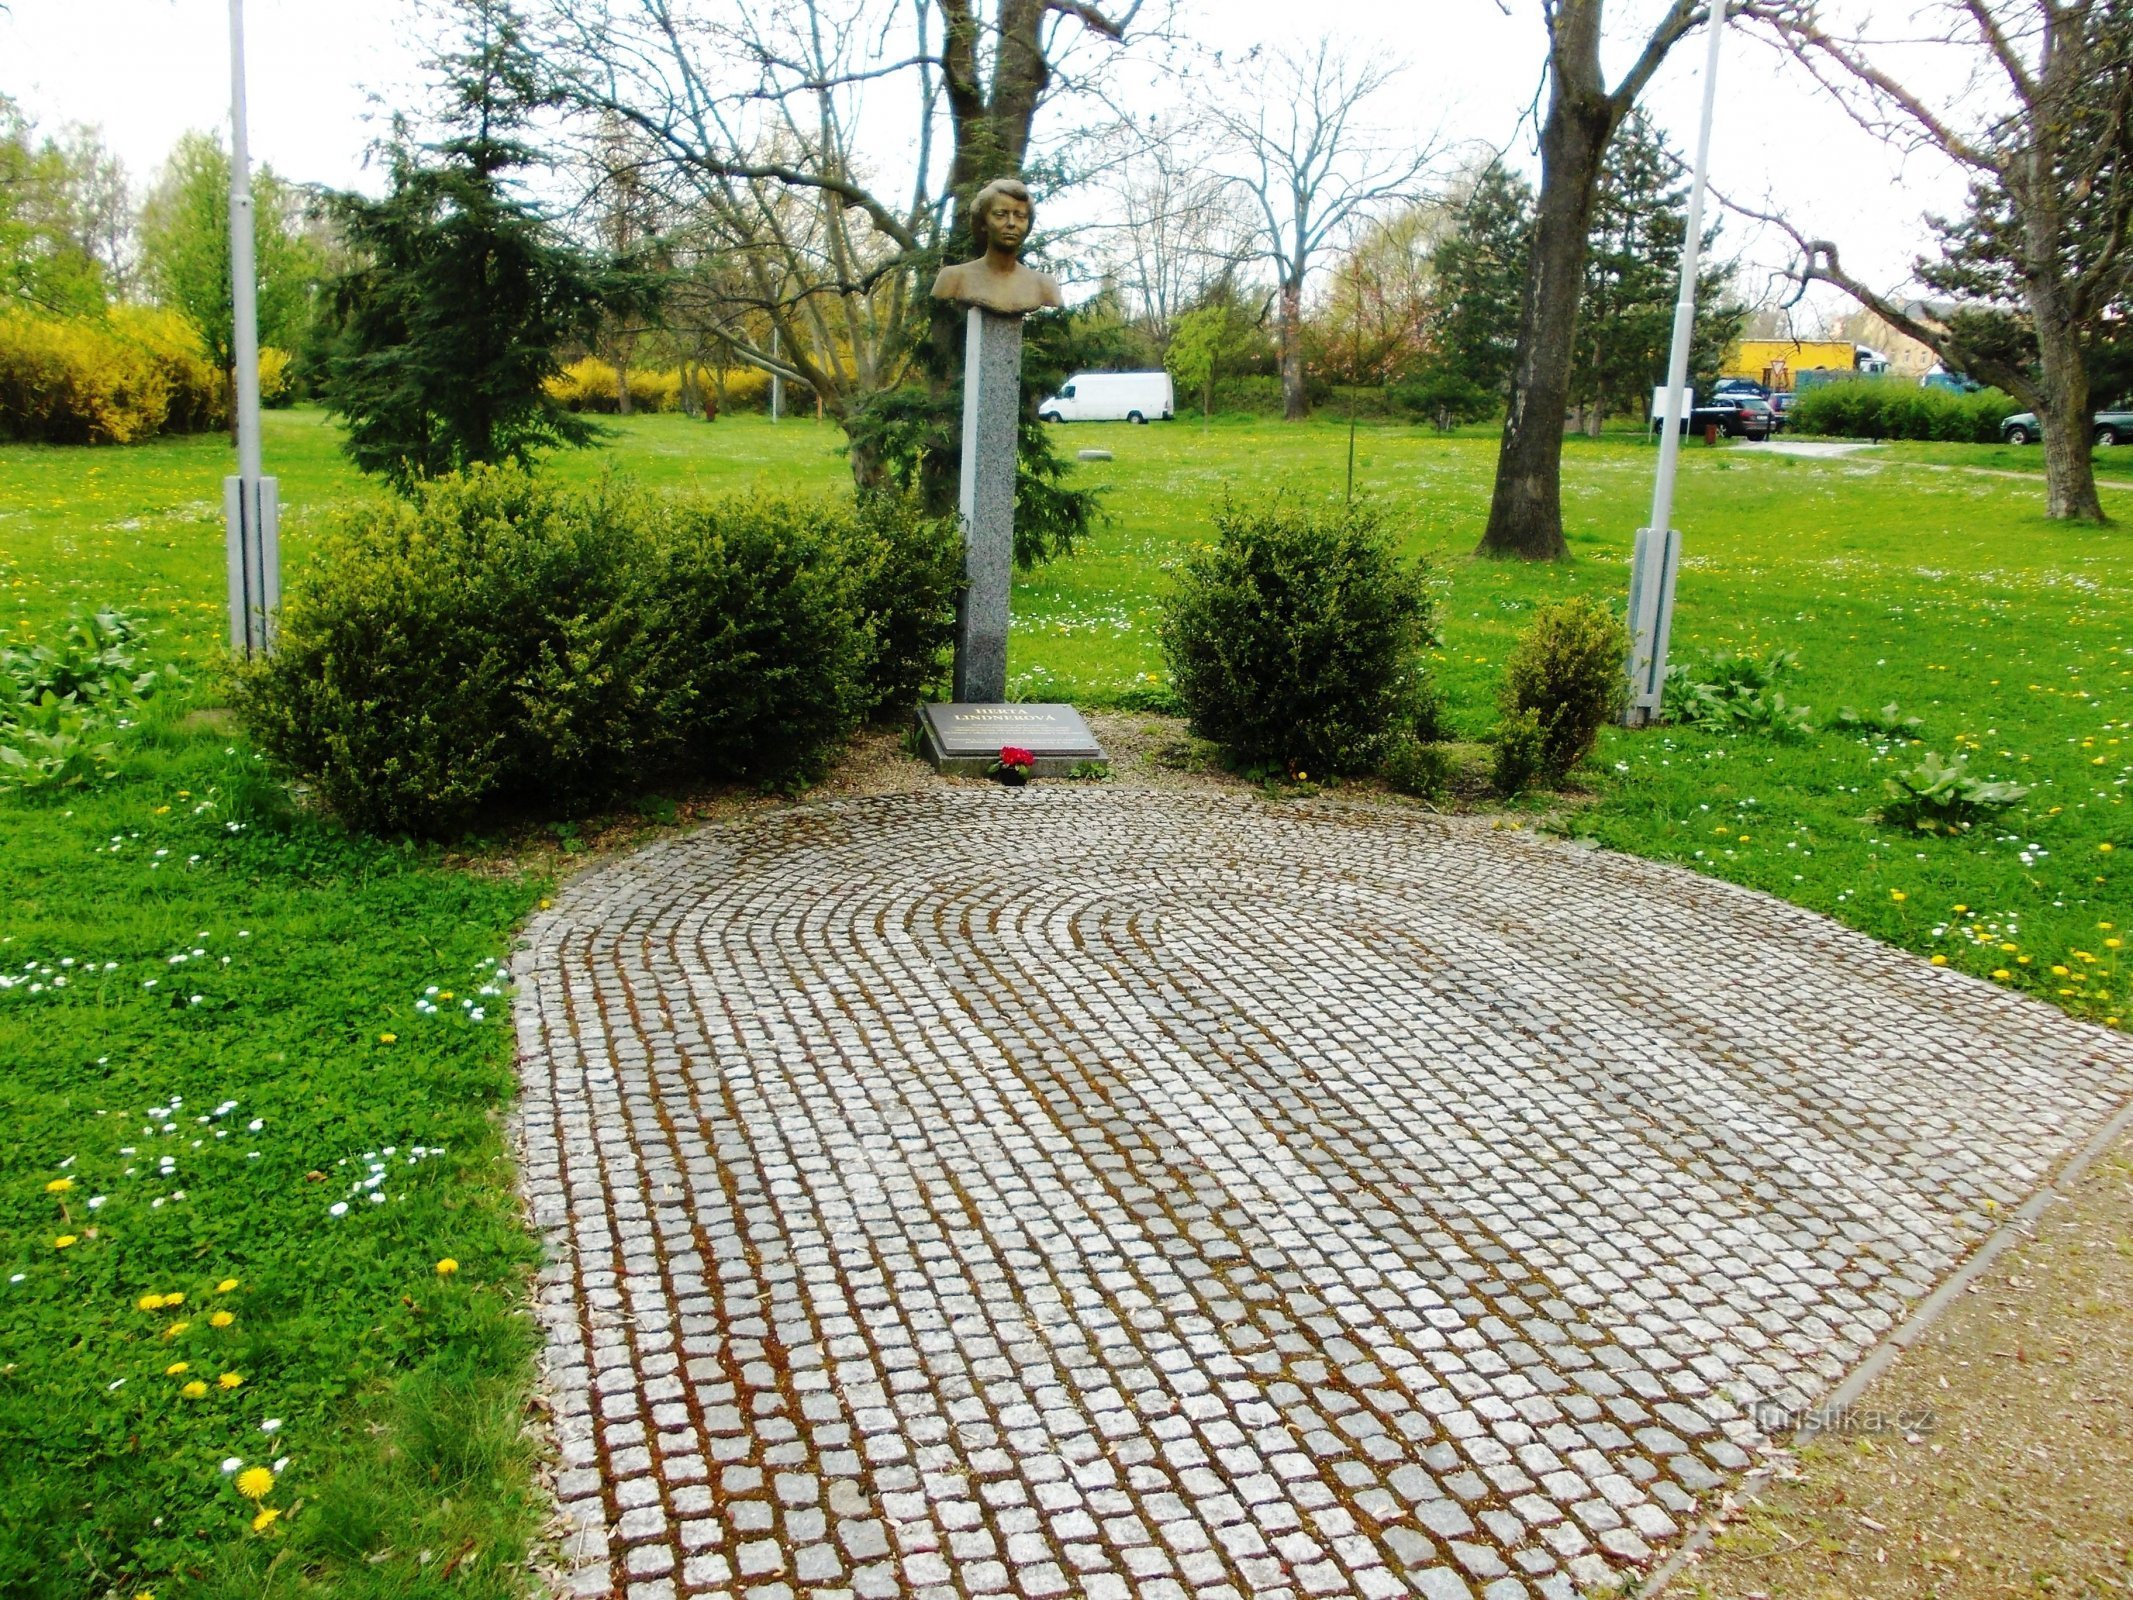 赫塔·林德纳 (Herta Lindner) 的纪念碑点缀着公园